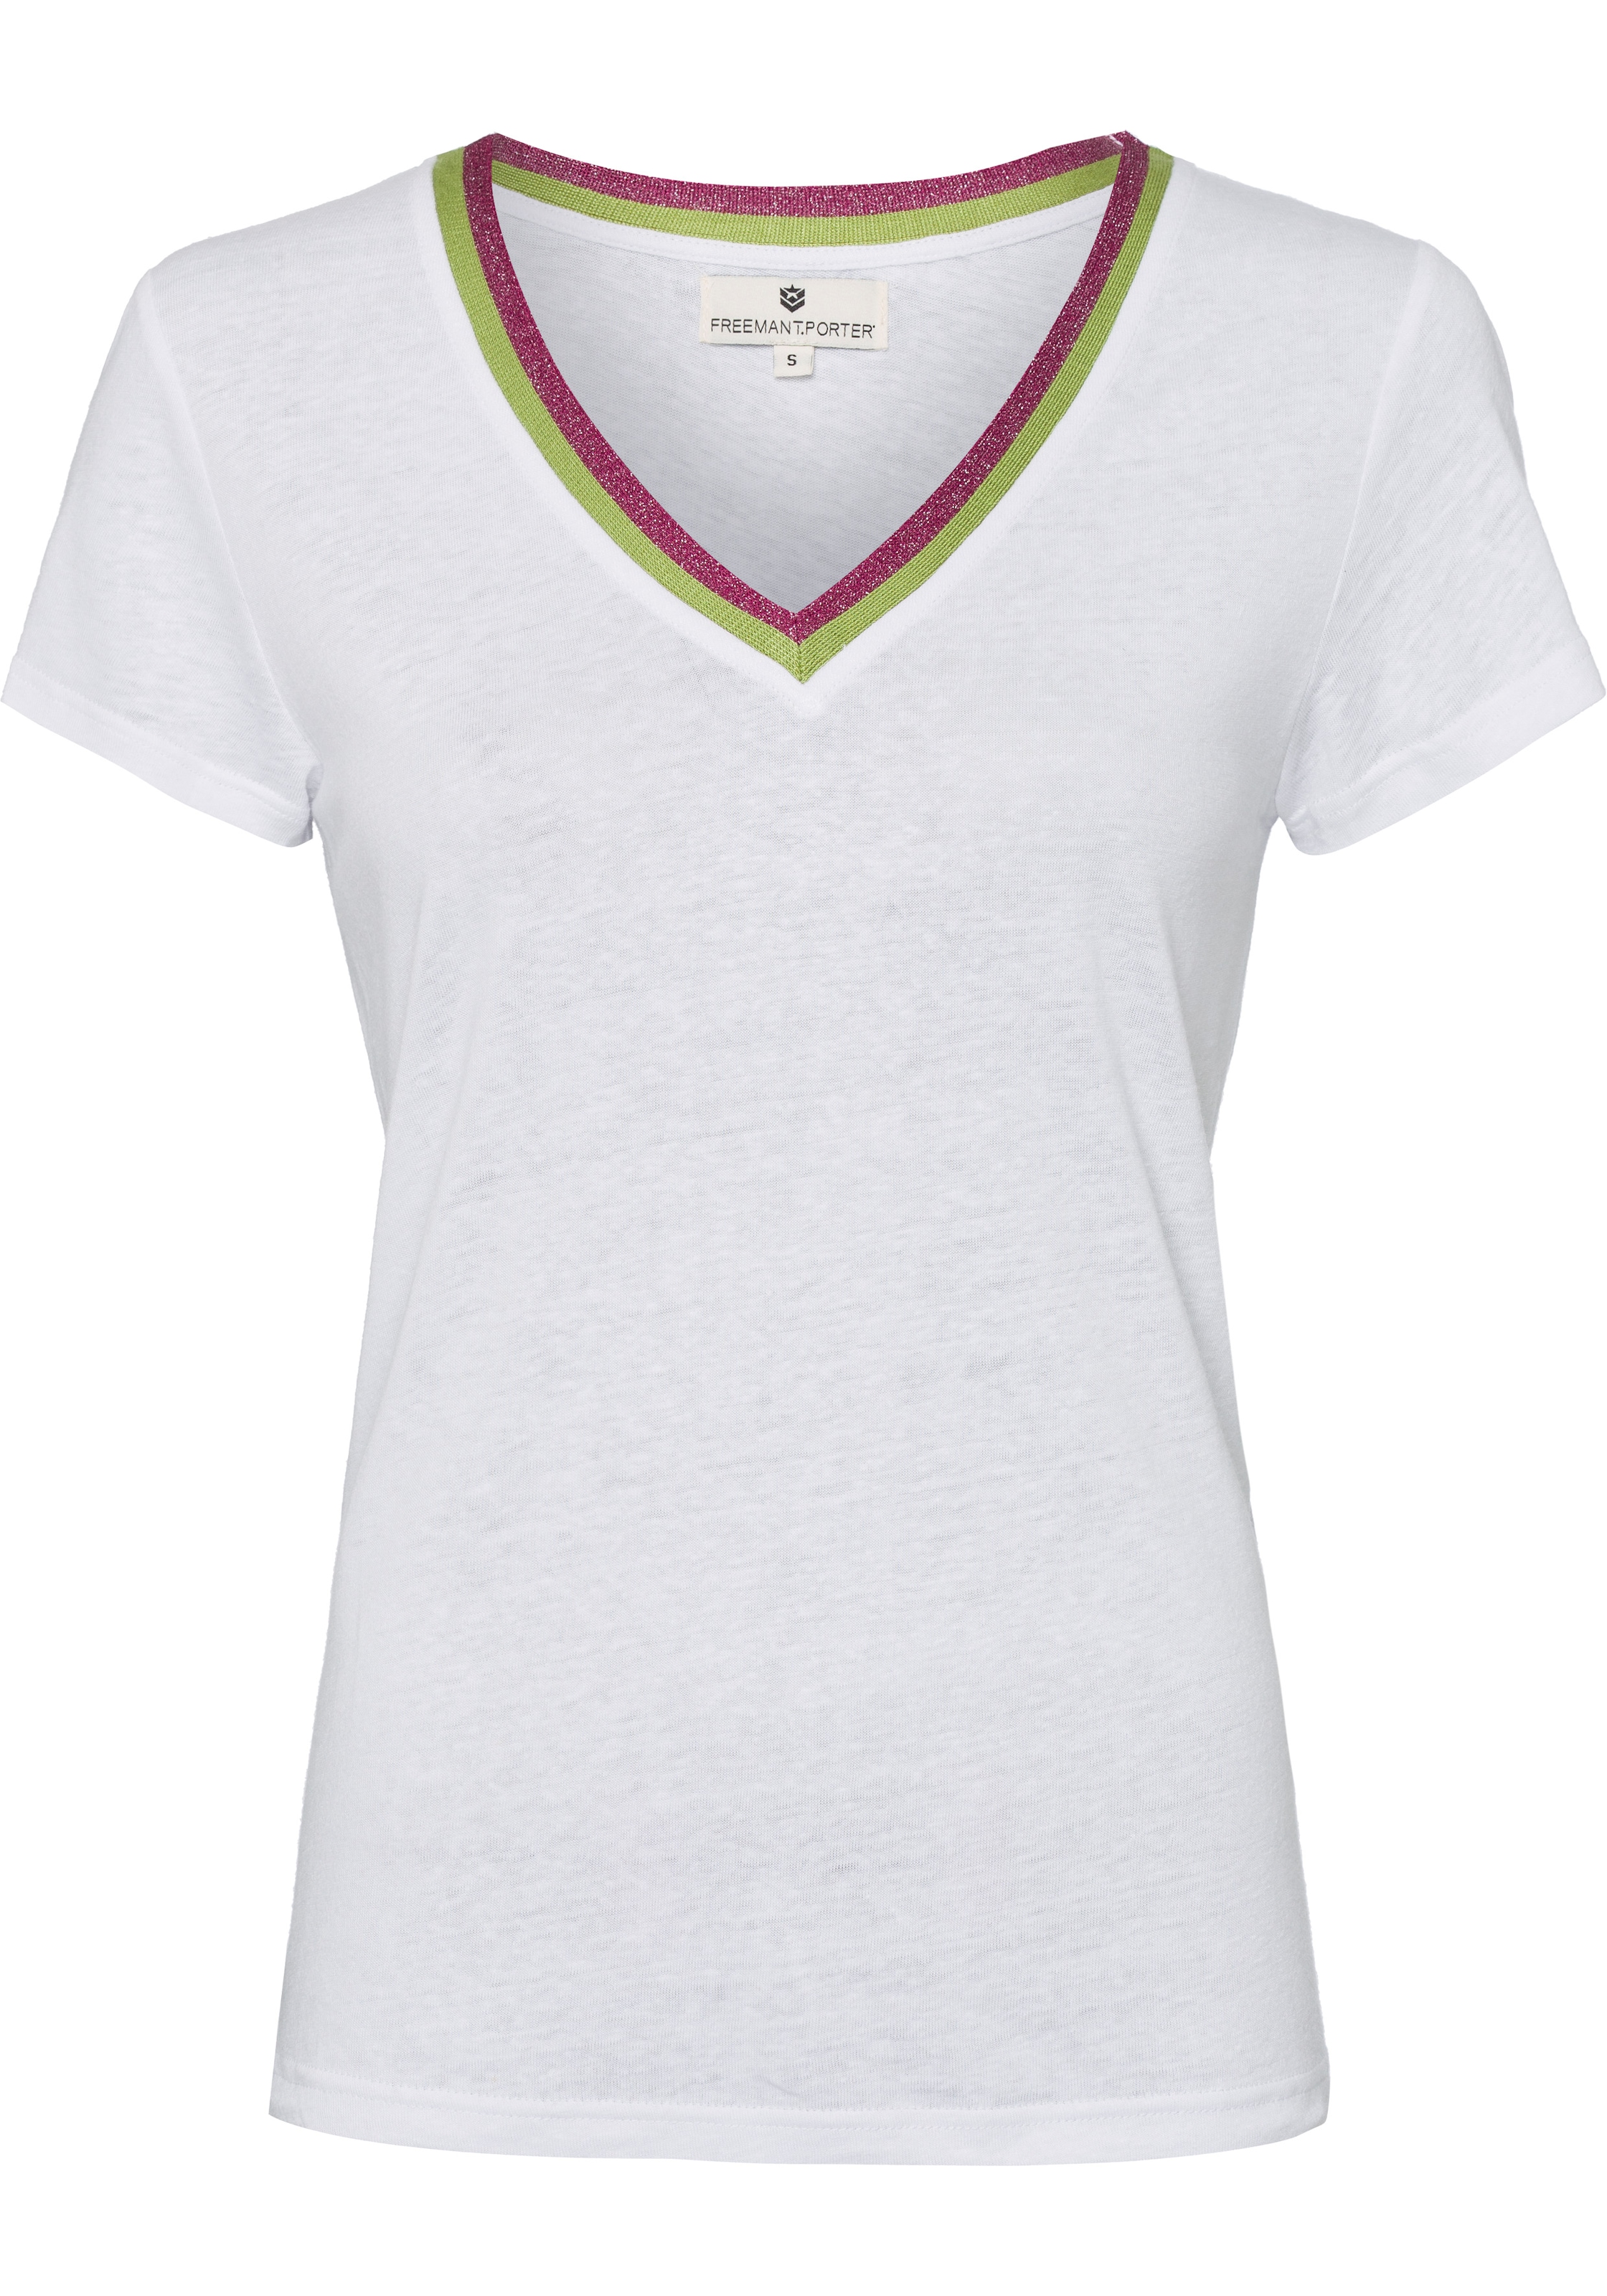 Freeman T. Porter T-Shirt, (1 tlg.), mit Streifenbündchen im Retro-Look für  bestellen | BAUR